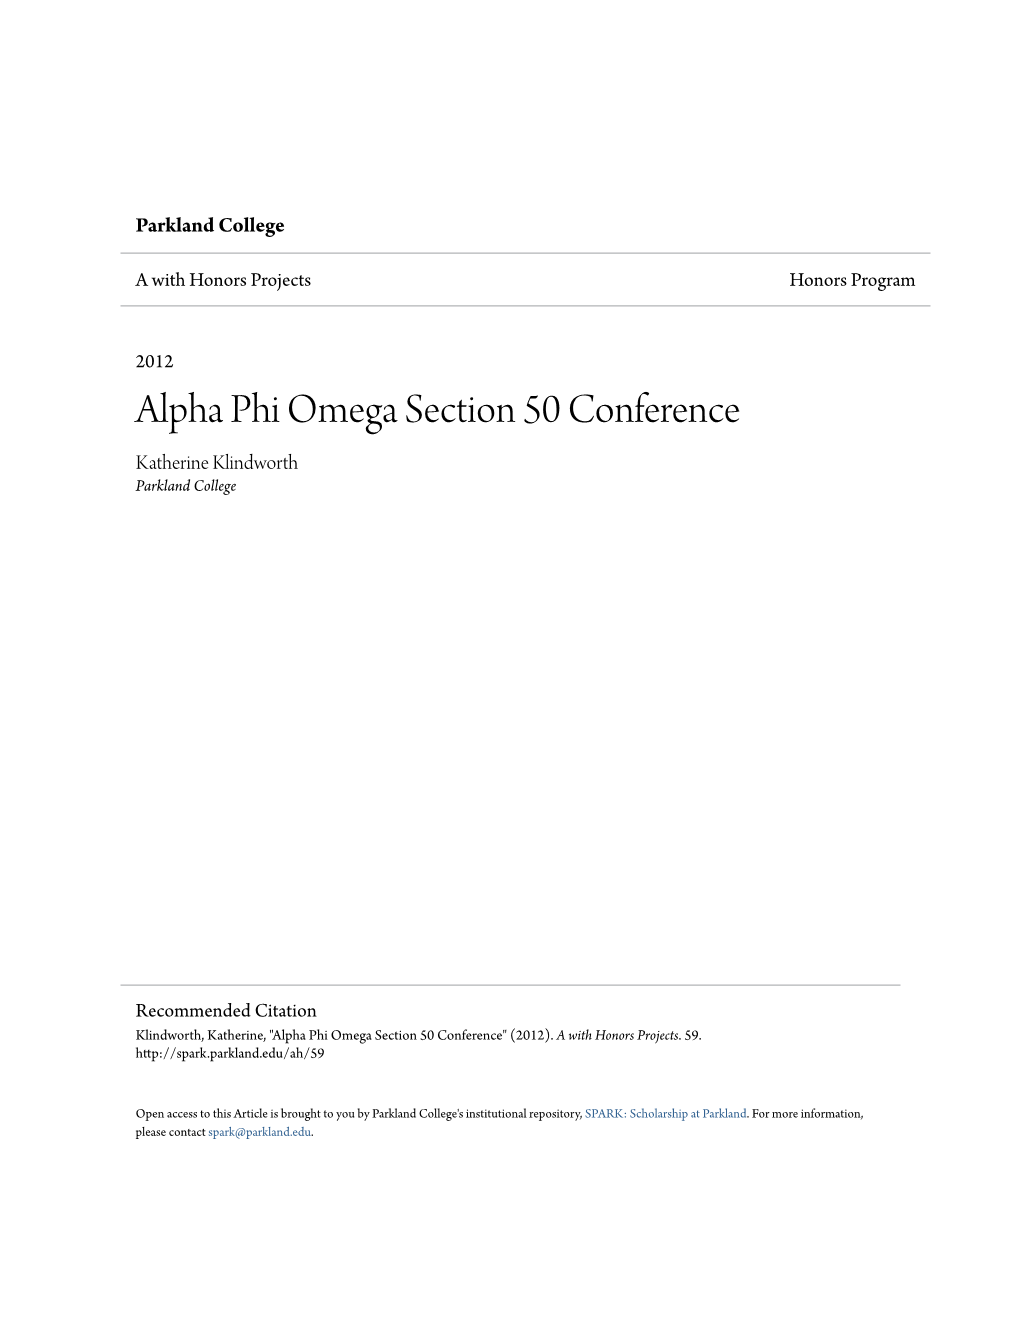 Alpha Phi Omega Section 50 Conference Katherine Klindworth Parkland College